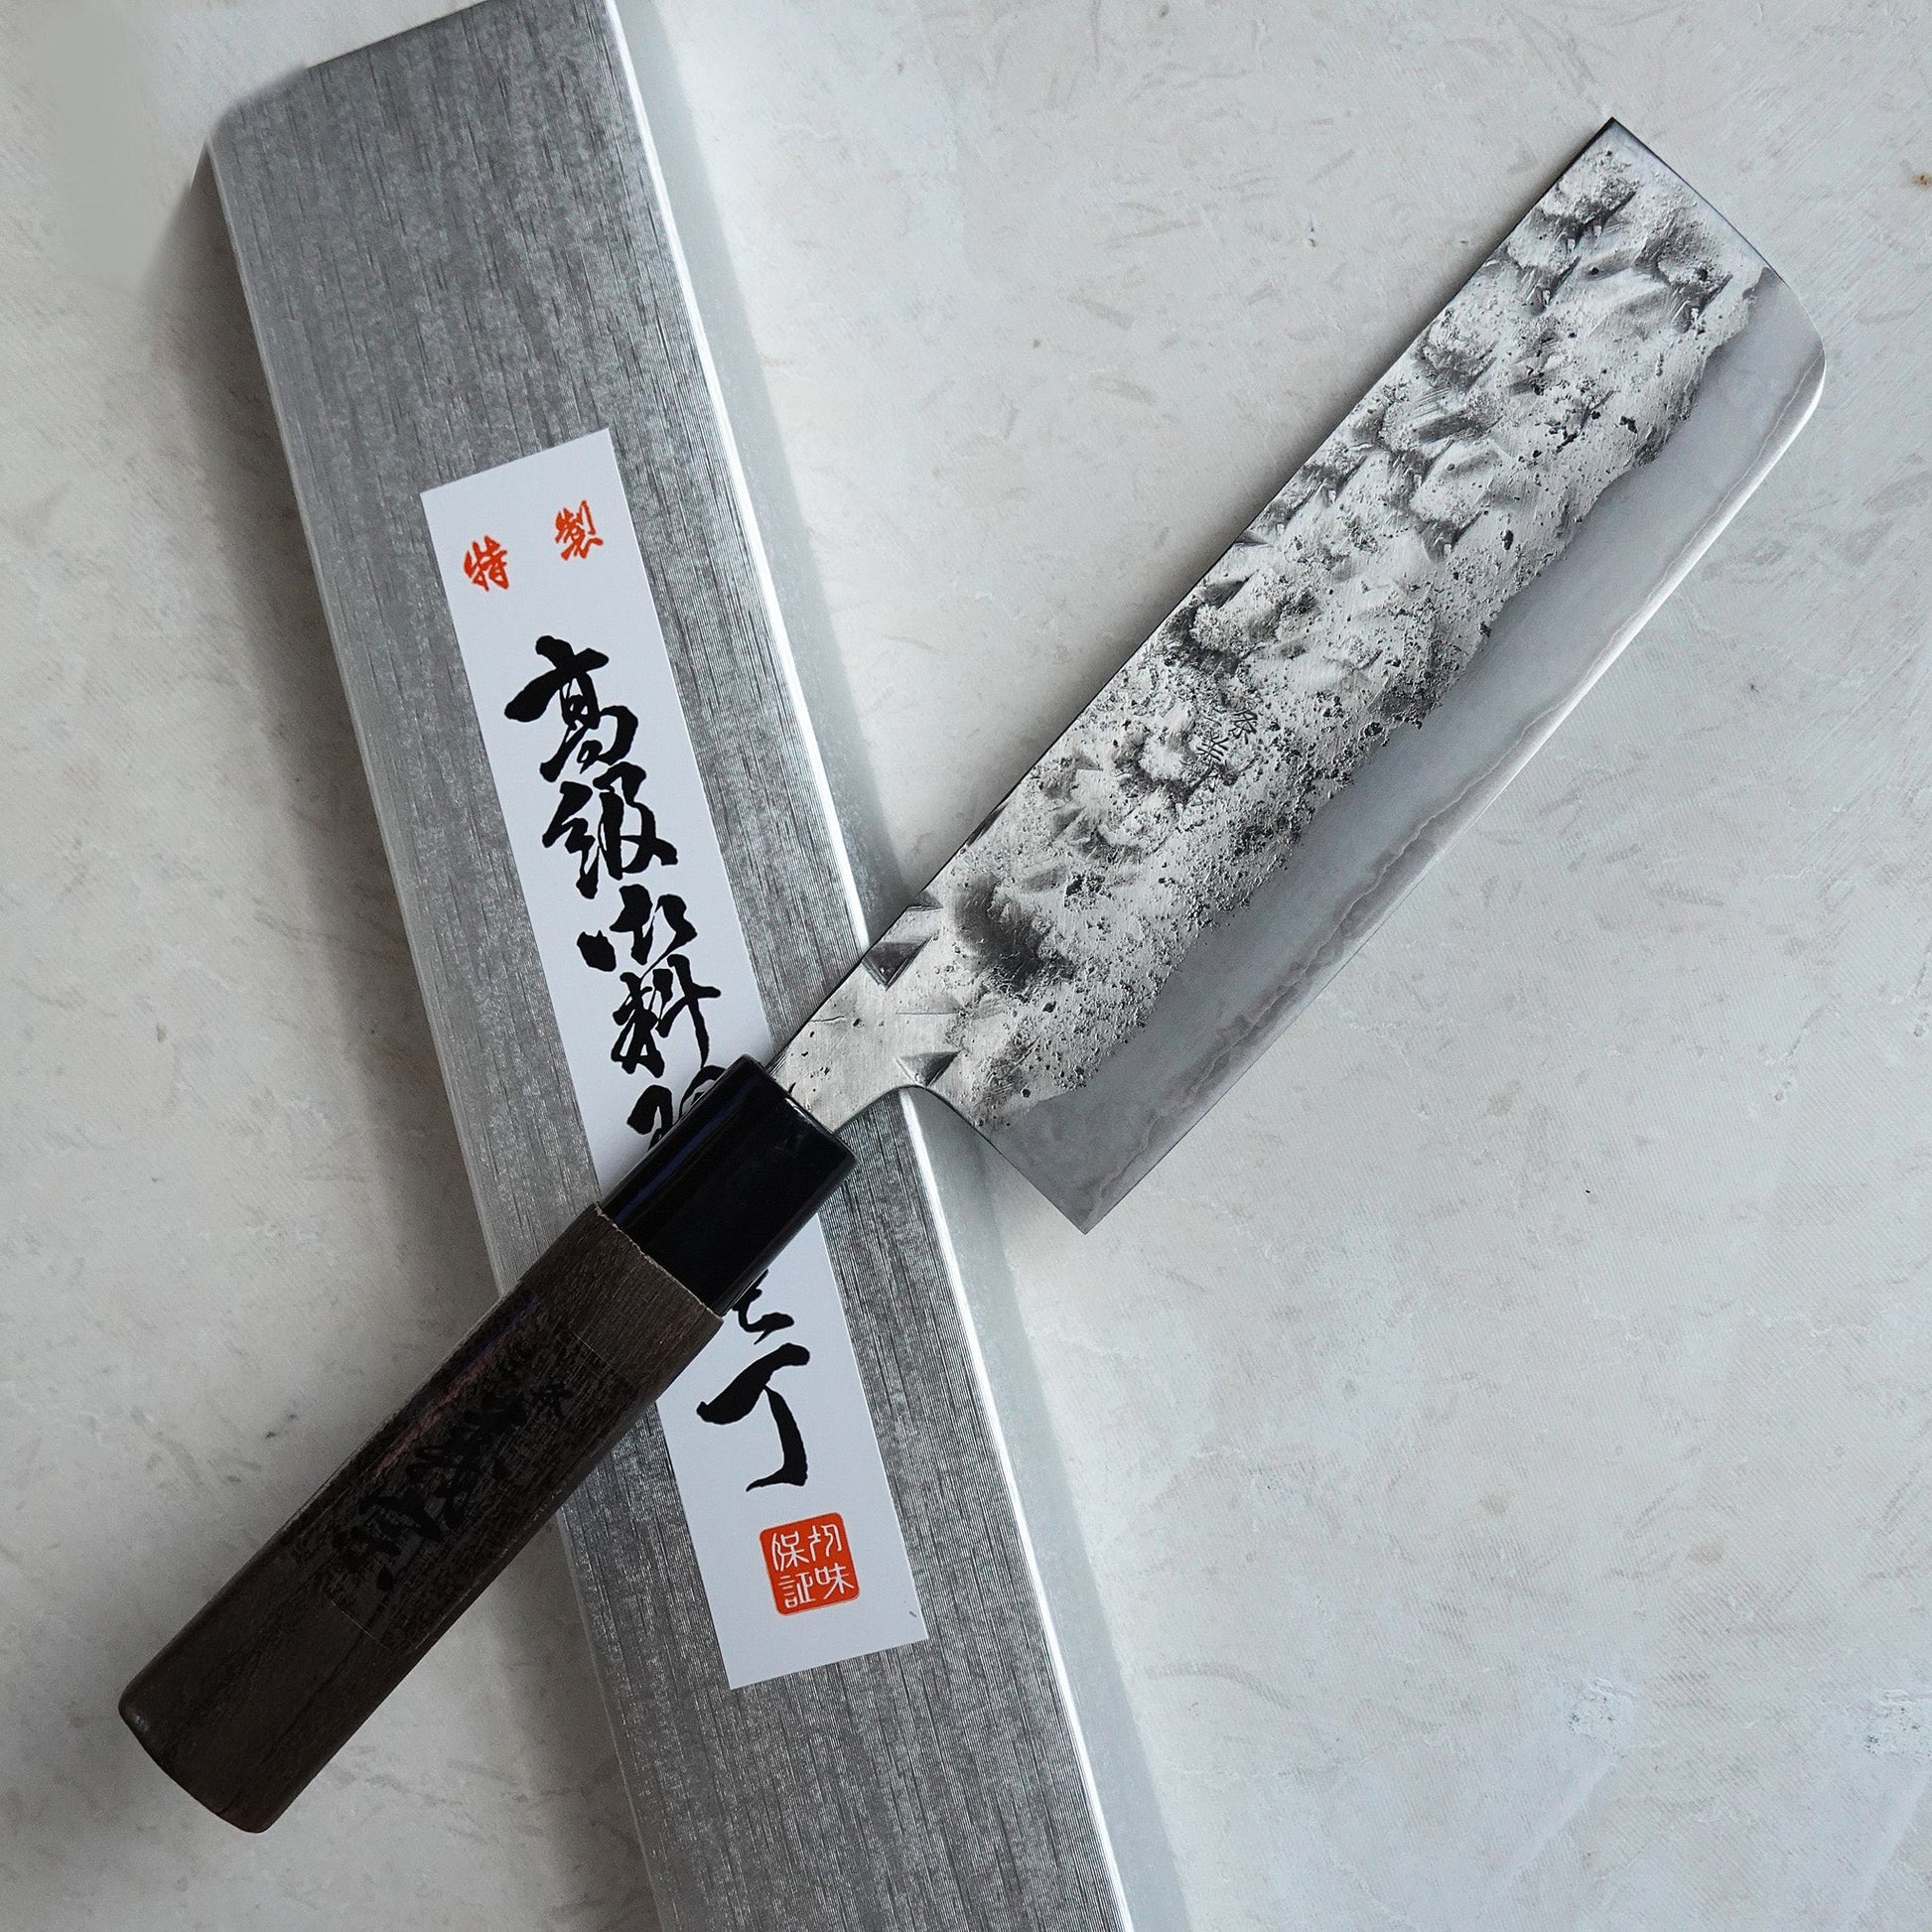 Cuchillo Japonés